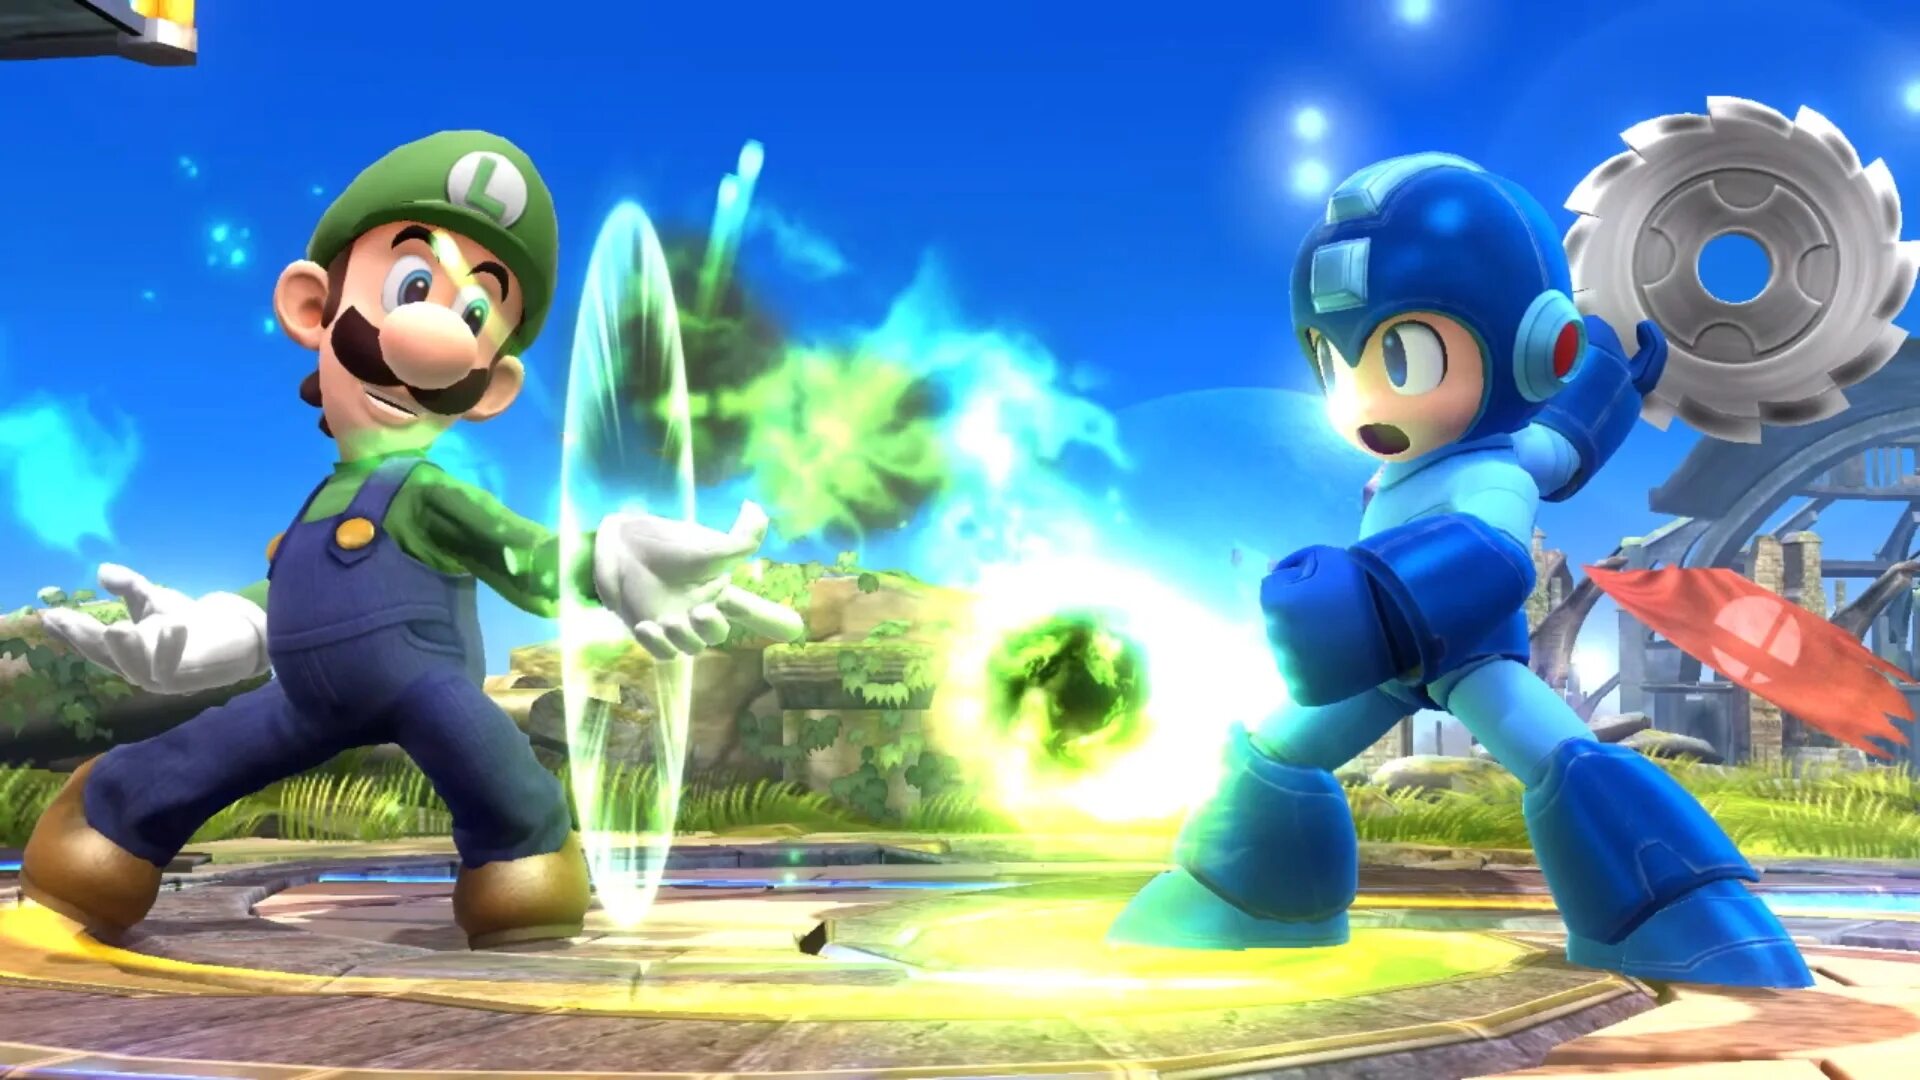 Mario smash bros. Super Smash Bros Wii u. Super Smash Bros Wii. Smash Bros DS. Super Smash Bros. Ultimate.